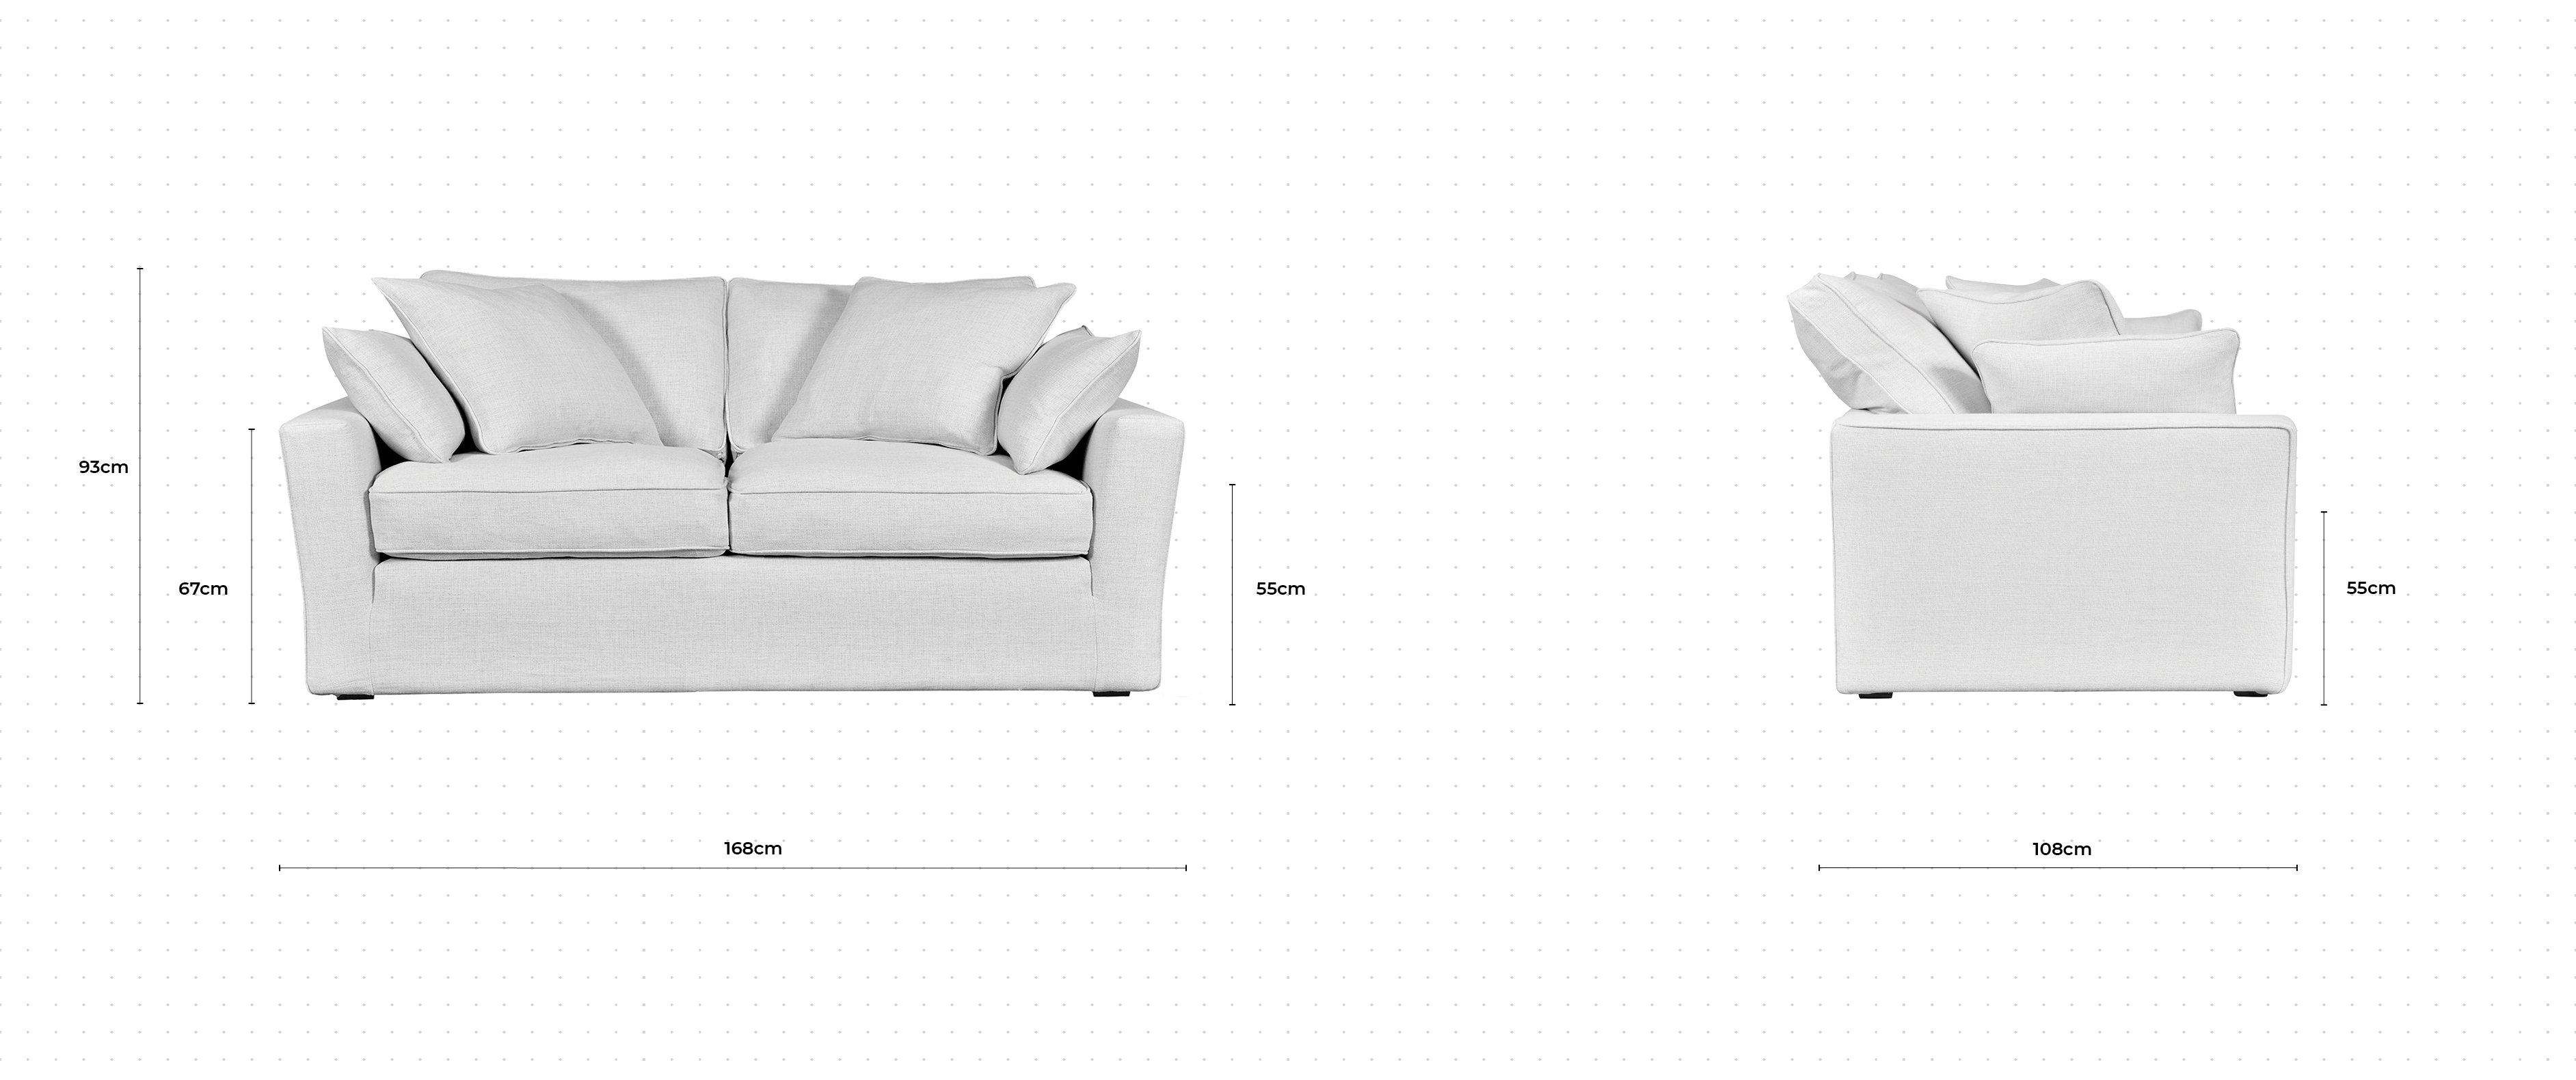 Caruso 2 Seater Sofa dimensions